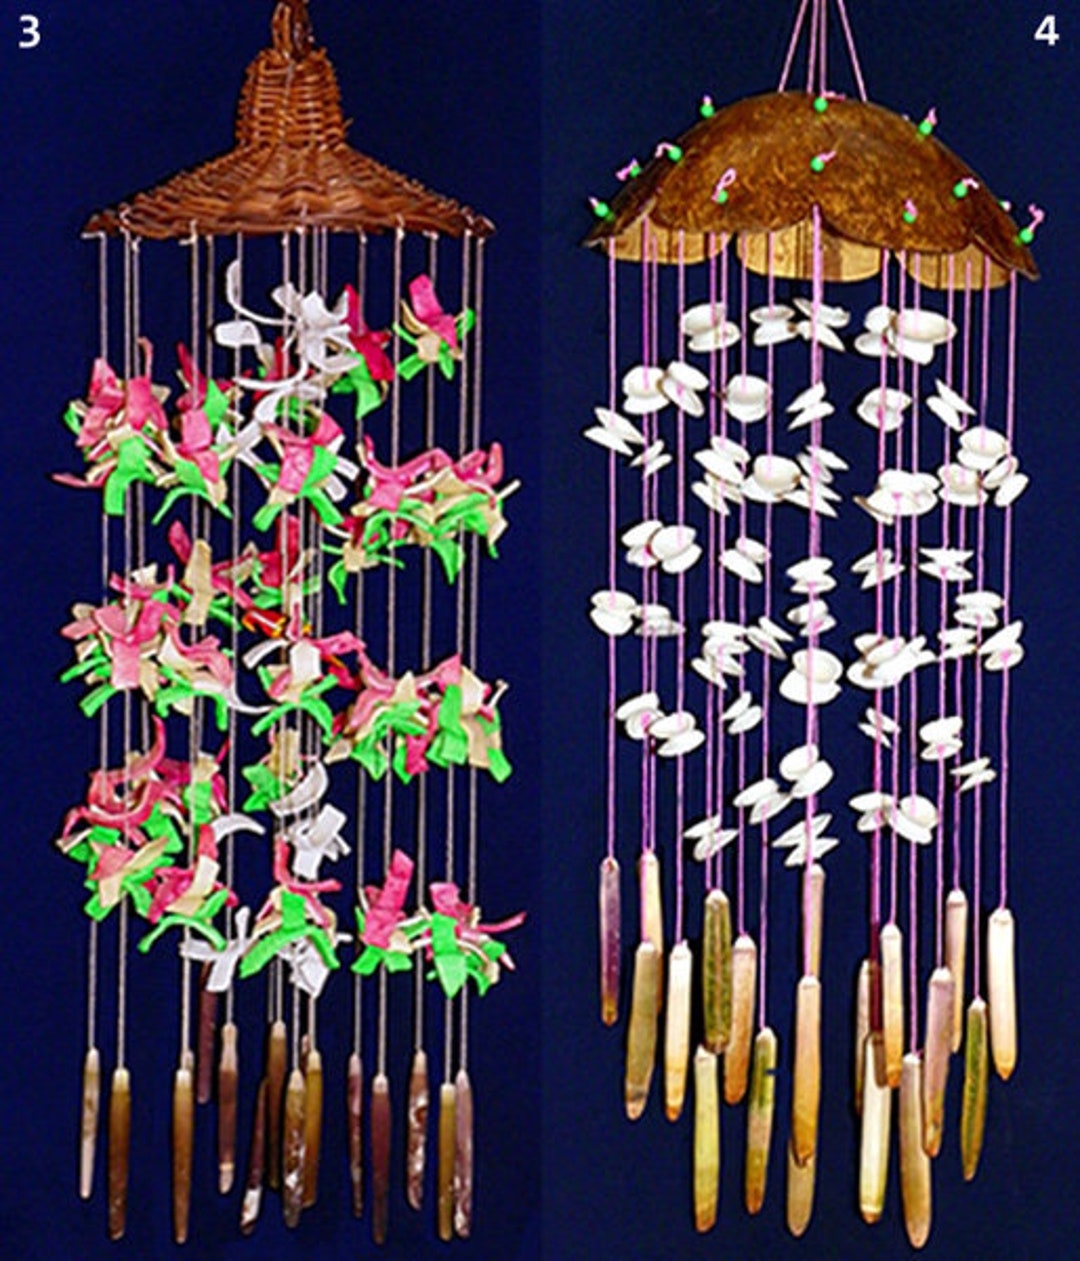 1 pièce Carillon éolien décor coquille, carillon éolien suspendu Boho avec  coquille pour la décoration intérieure et extérieure, Mode en ligne